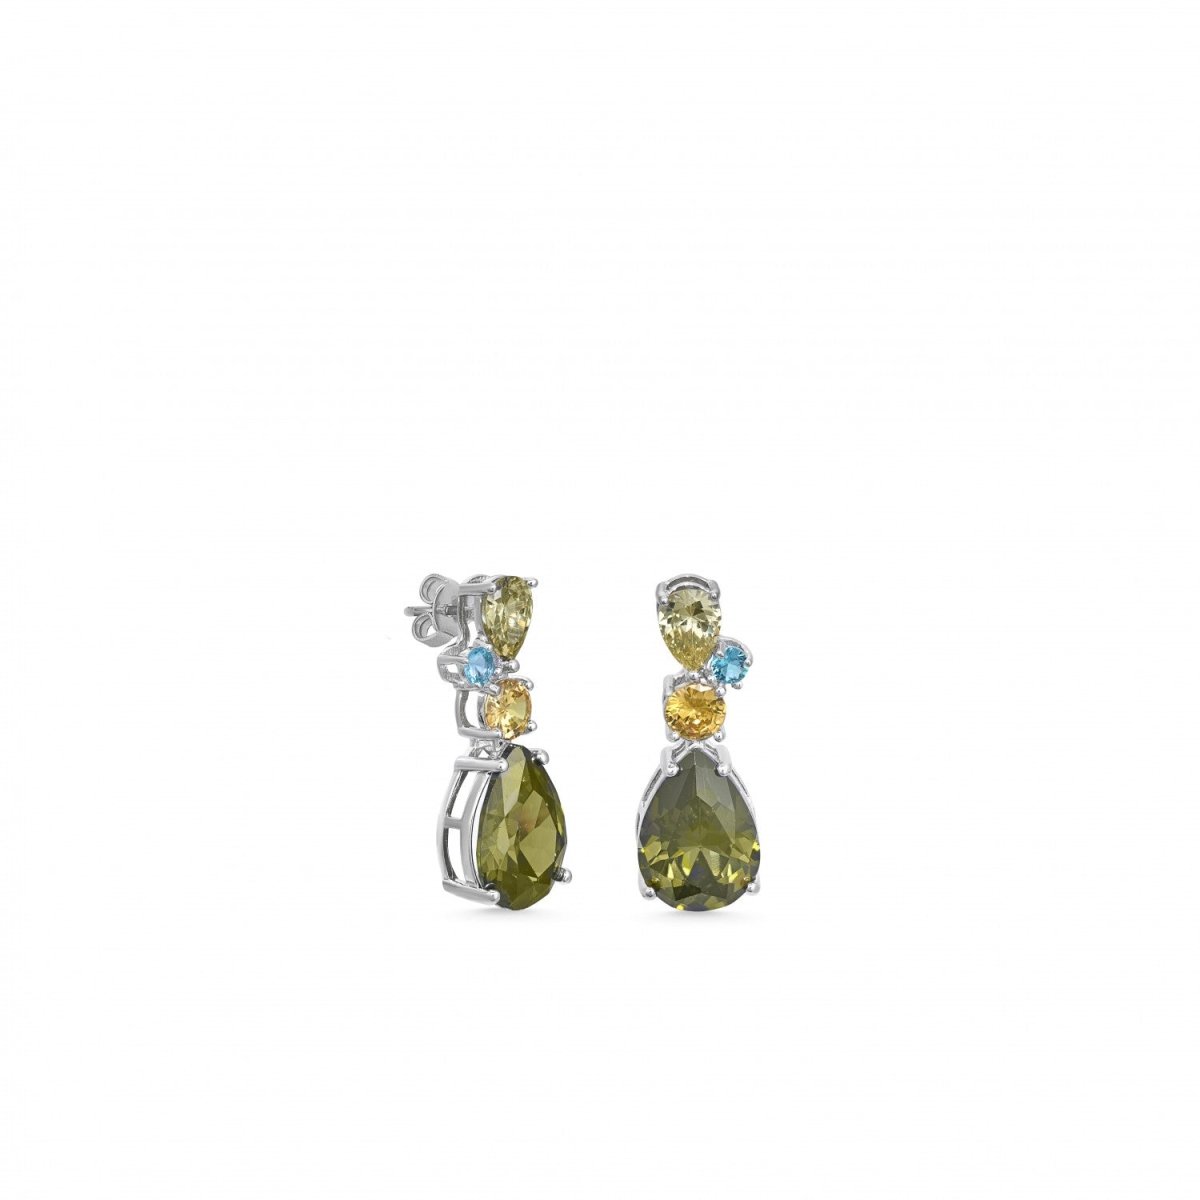 Pendiente · Pendientes de piedras de colores diseño gemas talla redonda y pera